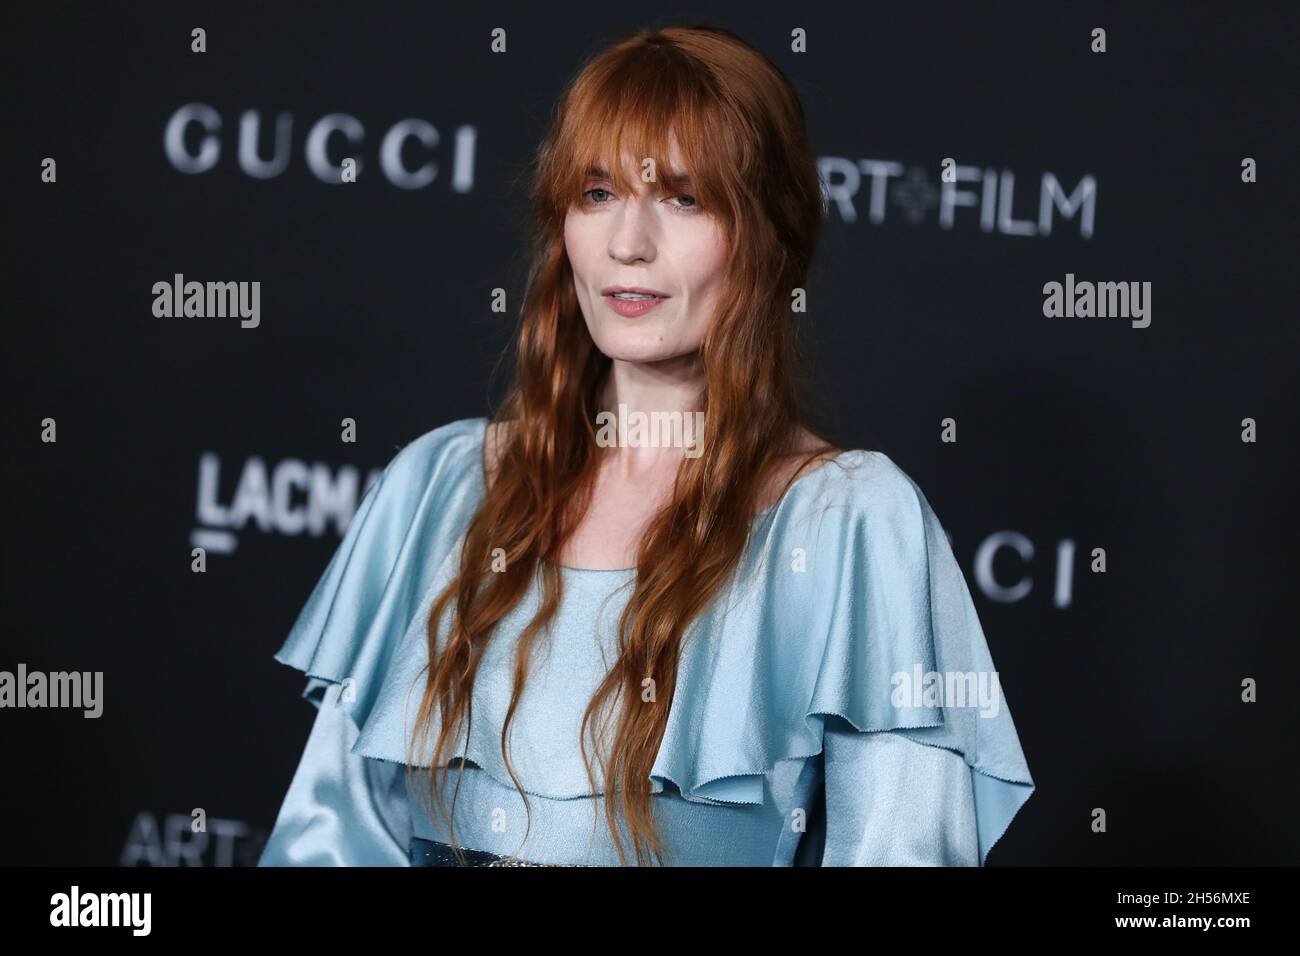 LOS ÁNGELES, CALIFORNIA, EE.UU. - 06 DE NOVIEMBRE: La cantante Florence  Welch vistiendo un vestido de Gucci llega a la Gala anual de arte y cine  LACMA 2021 de 10th, celebrada en